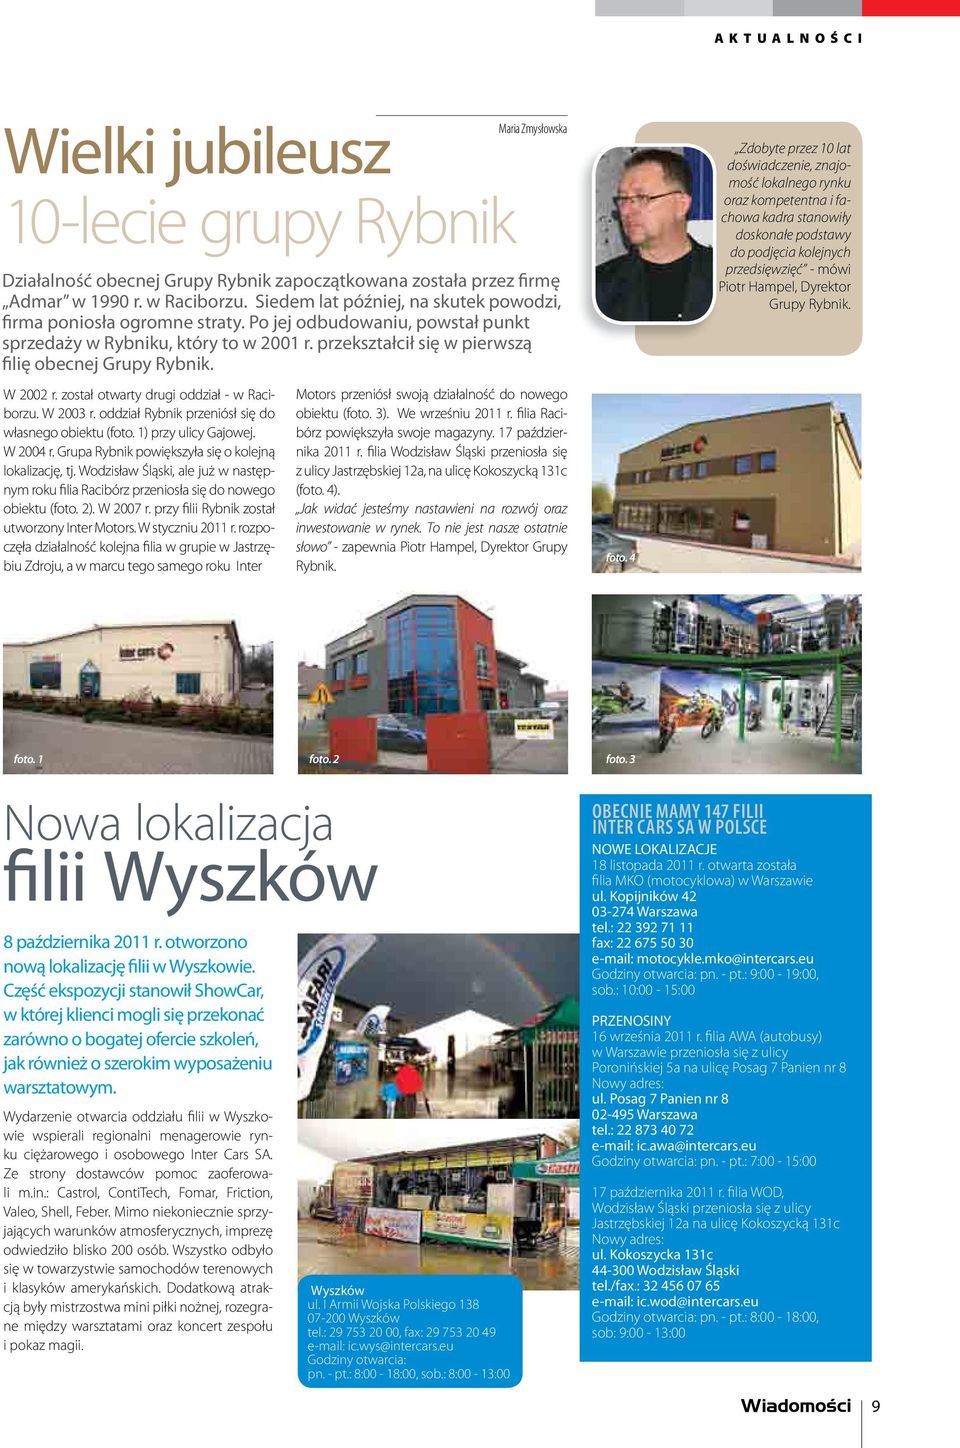 W 2002 r. został otwarty drugi oddział - w Raciborzu. W 2003 r. oddział Rybnik przeniósł się do własnego obiektu (foto. 1) przy ulicy Gajowej. W 2004 r.